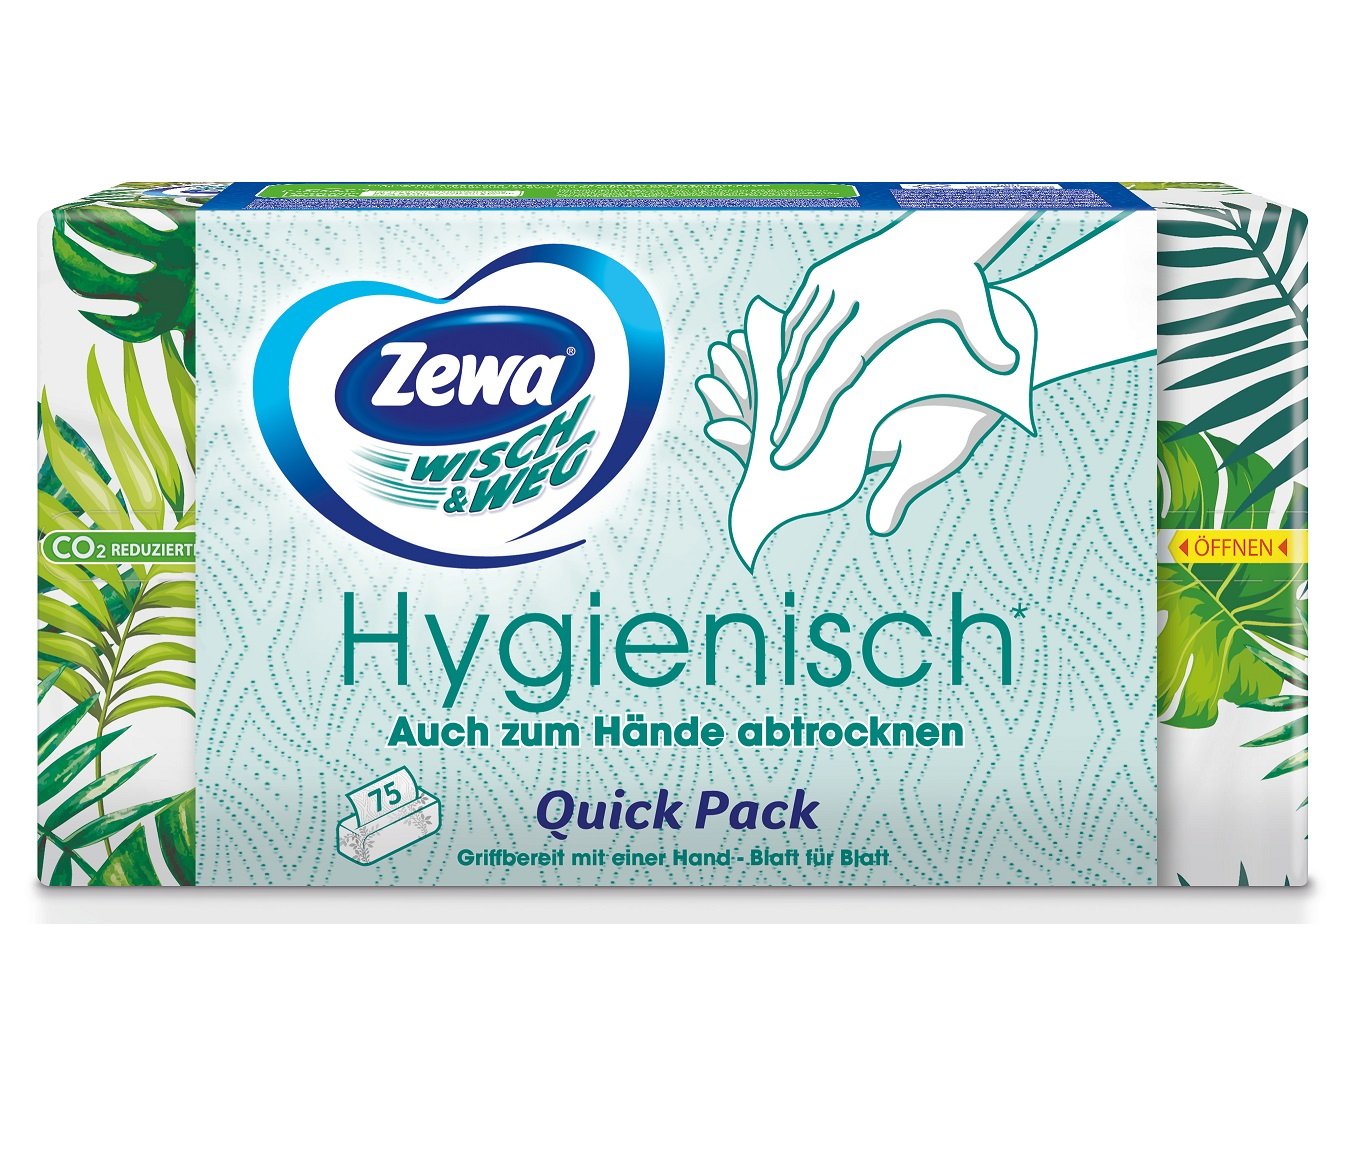 Бумажные полотенца Zewa Wisch&Weg, двухслойные, 75 листов - фото 3